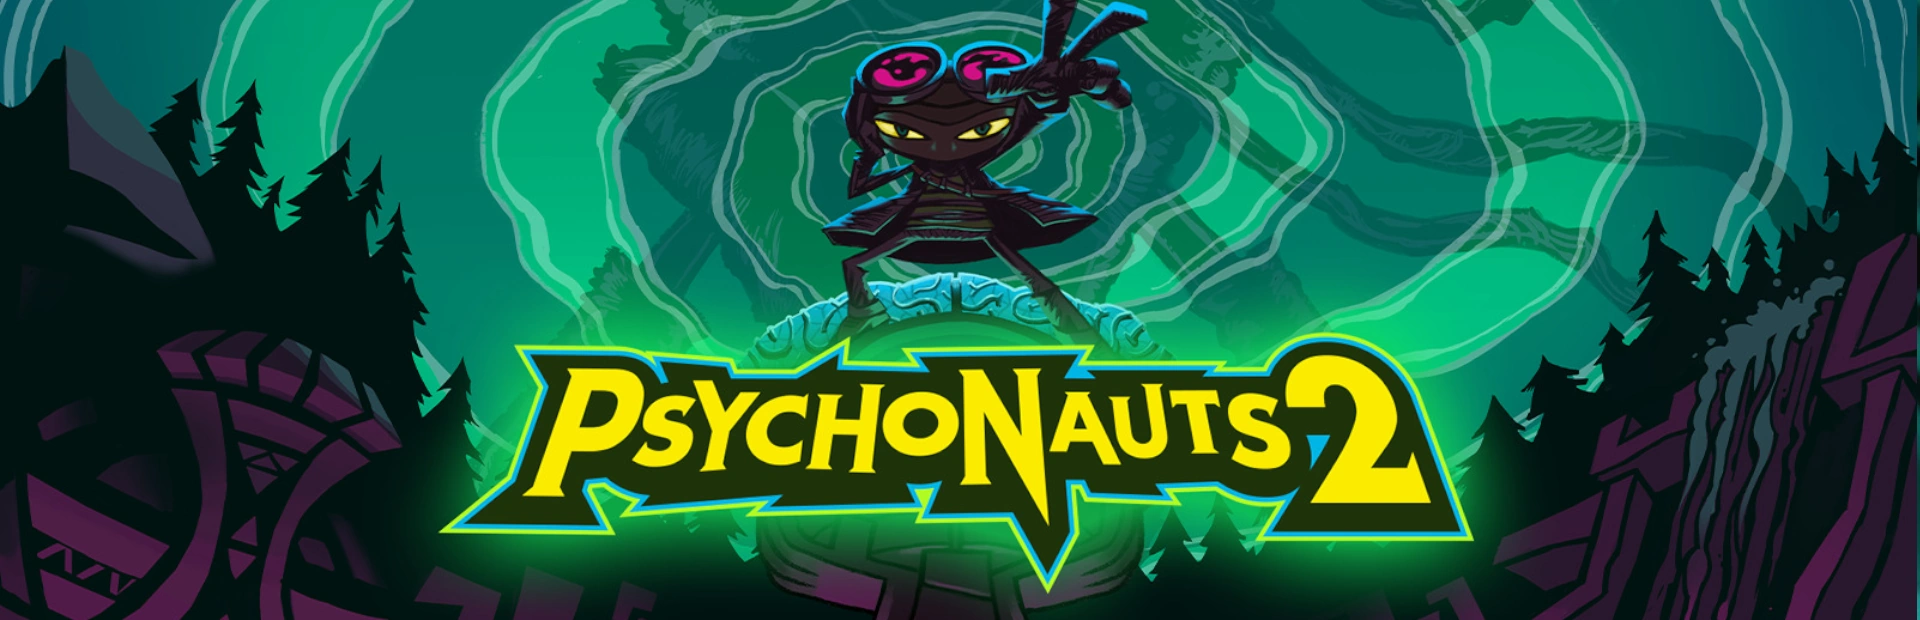 دانلود بازی Psychonauts 2 برای کامپیوتر | گیمباتو 